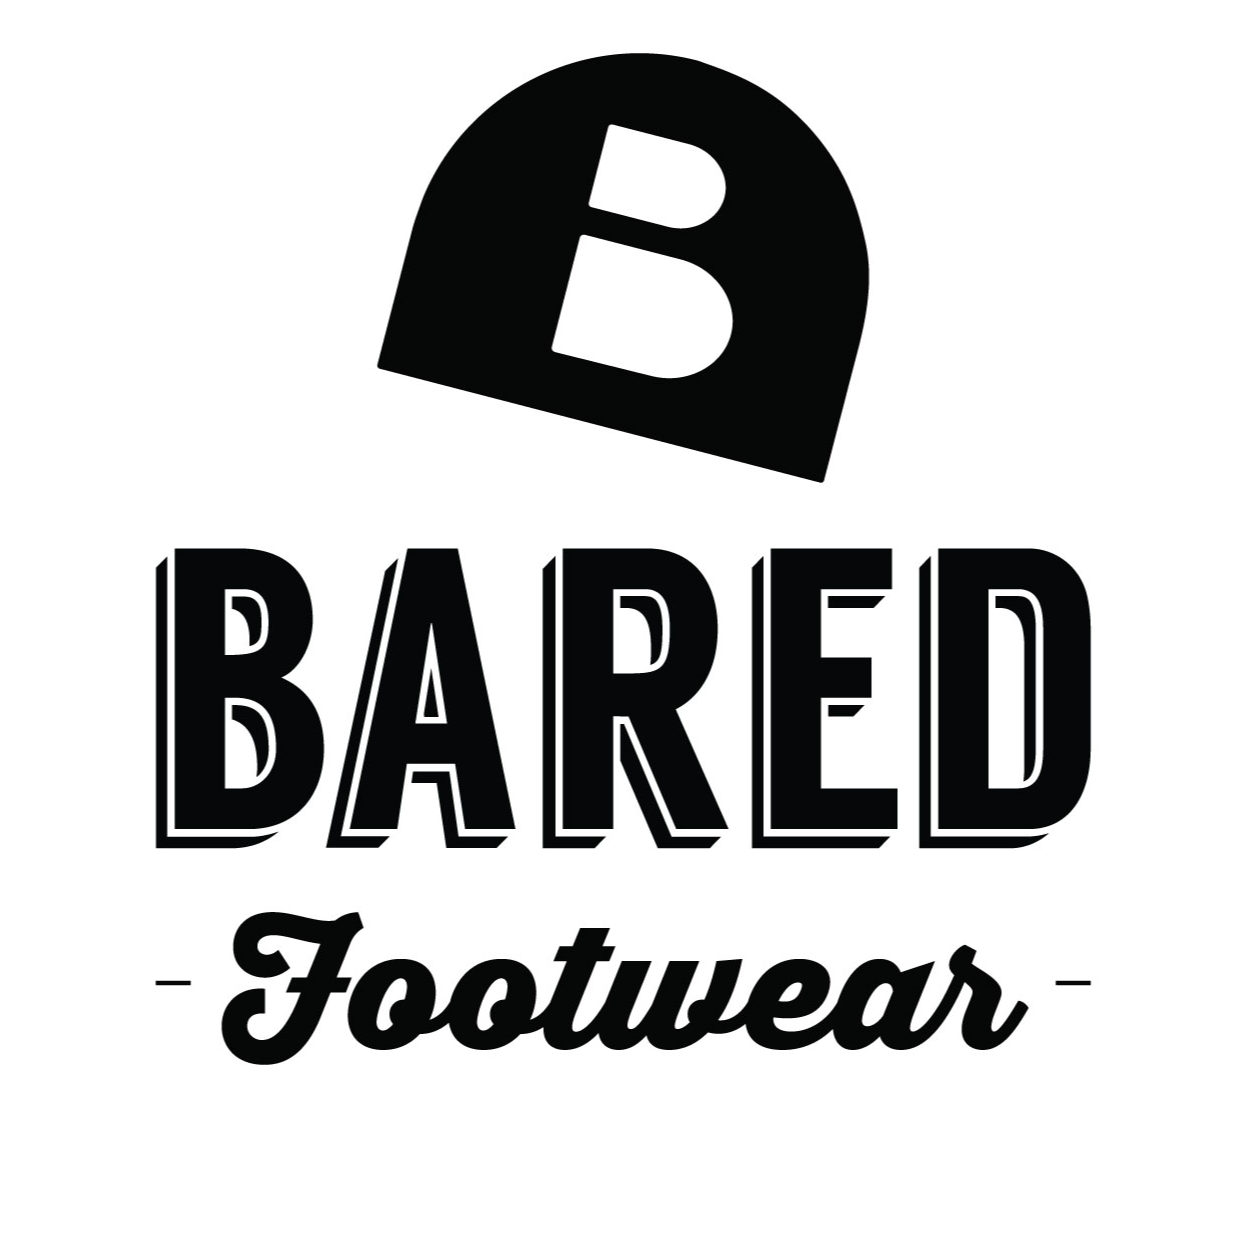 bared shoe